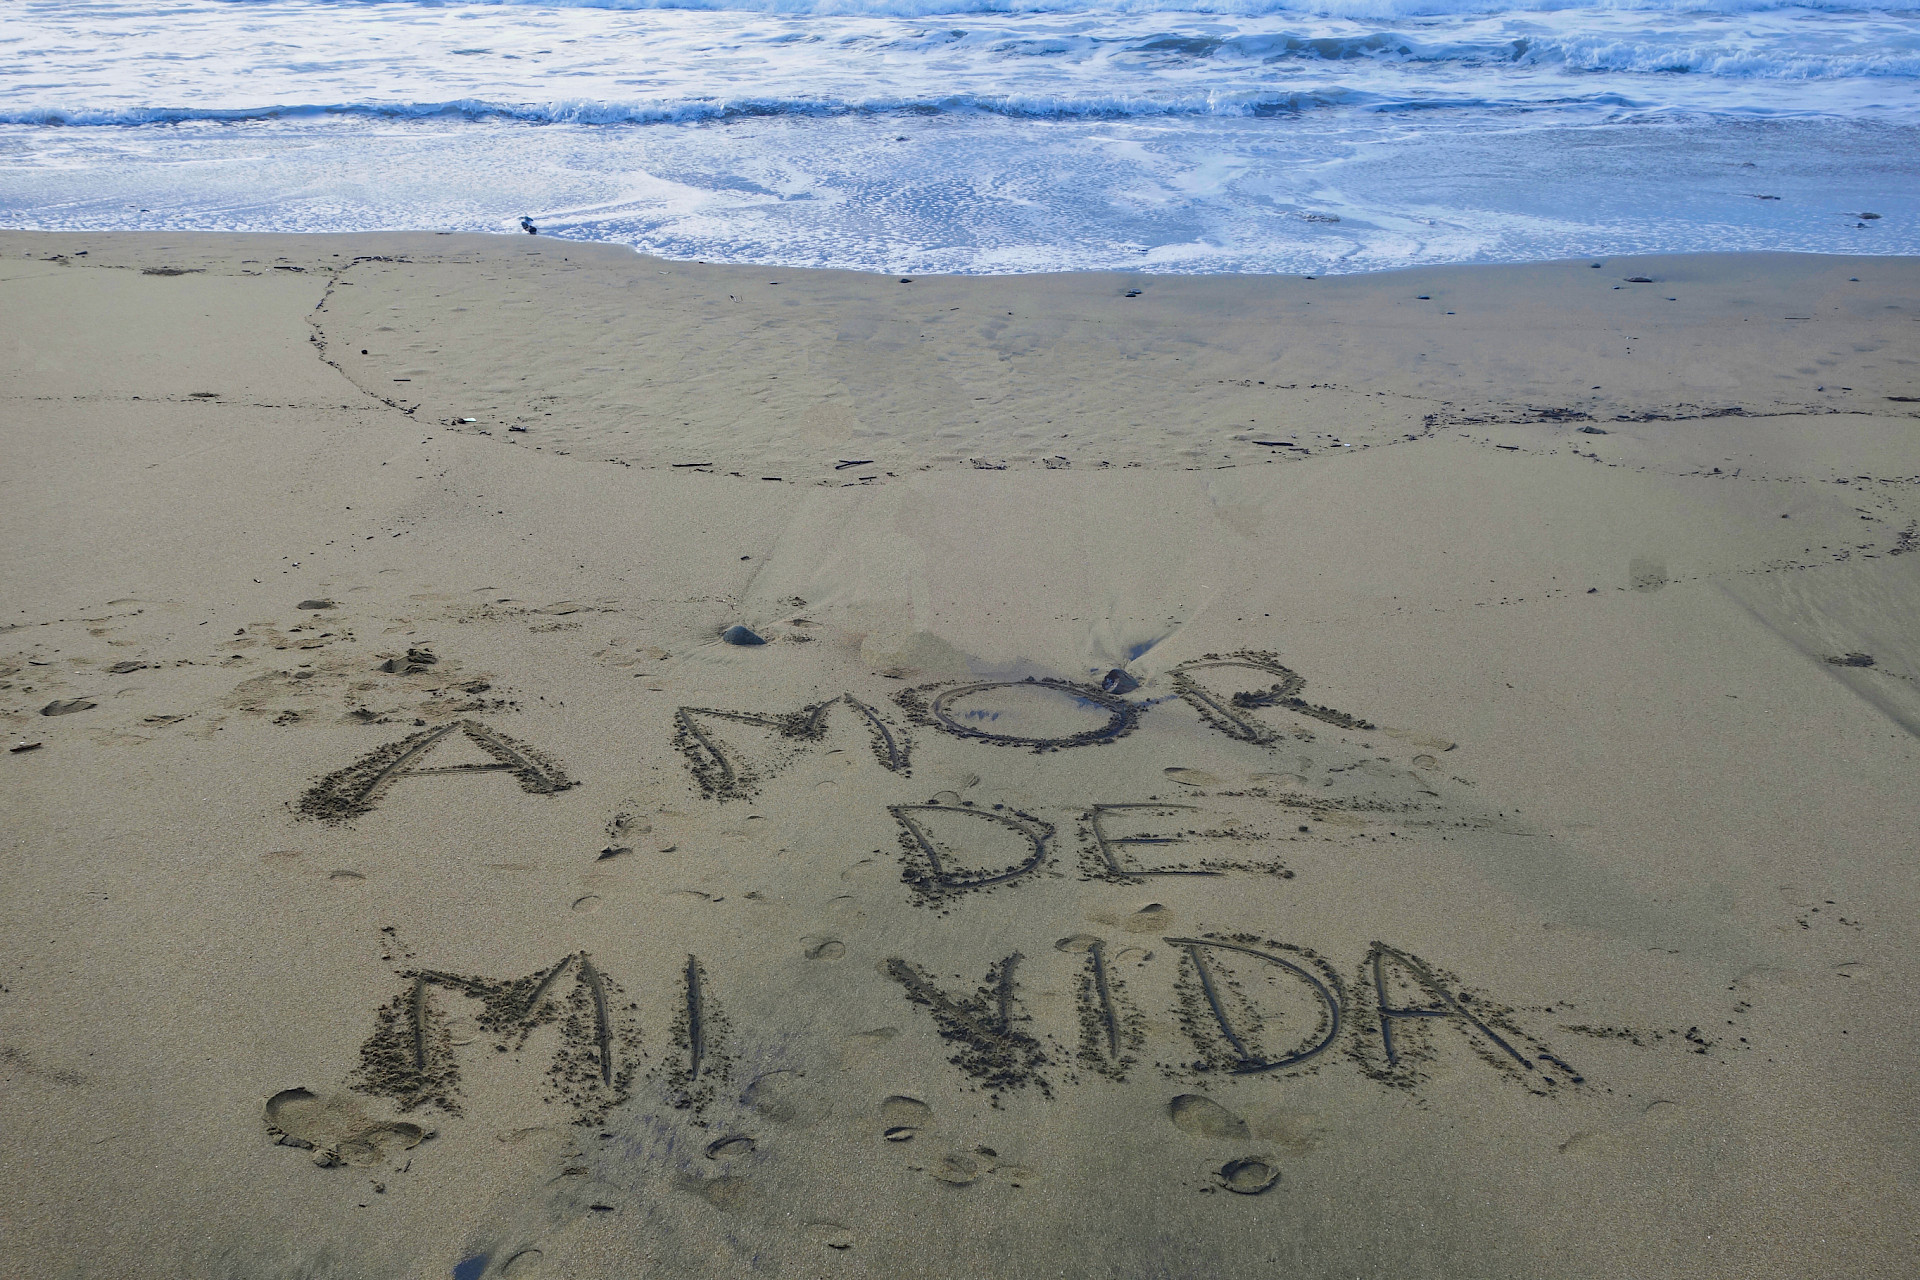 Frase Amor de mi vida escrita en la arena

Amor de mi vida
Escrito en arena
Playa de Panamá
Olas